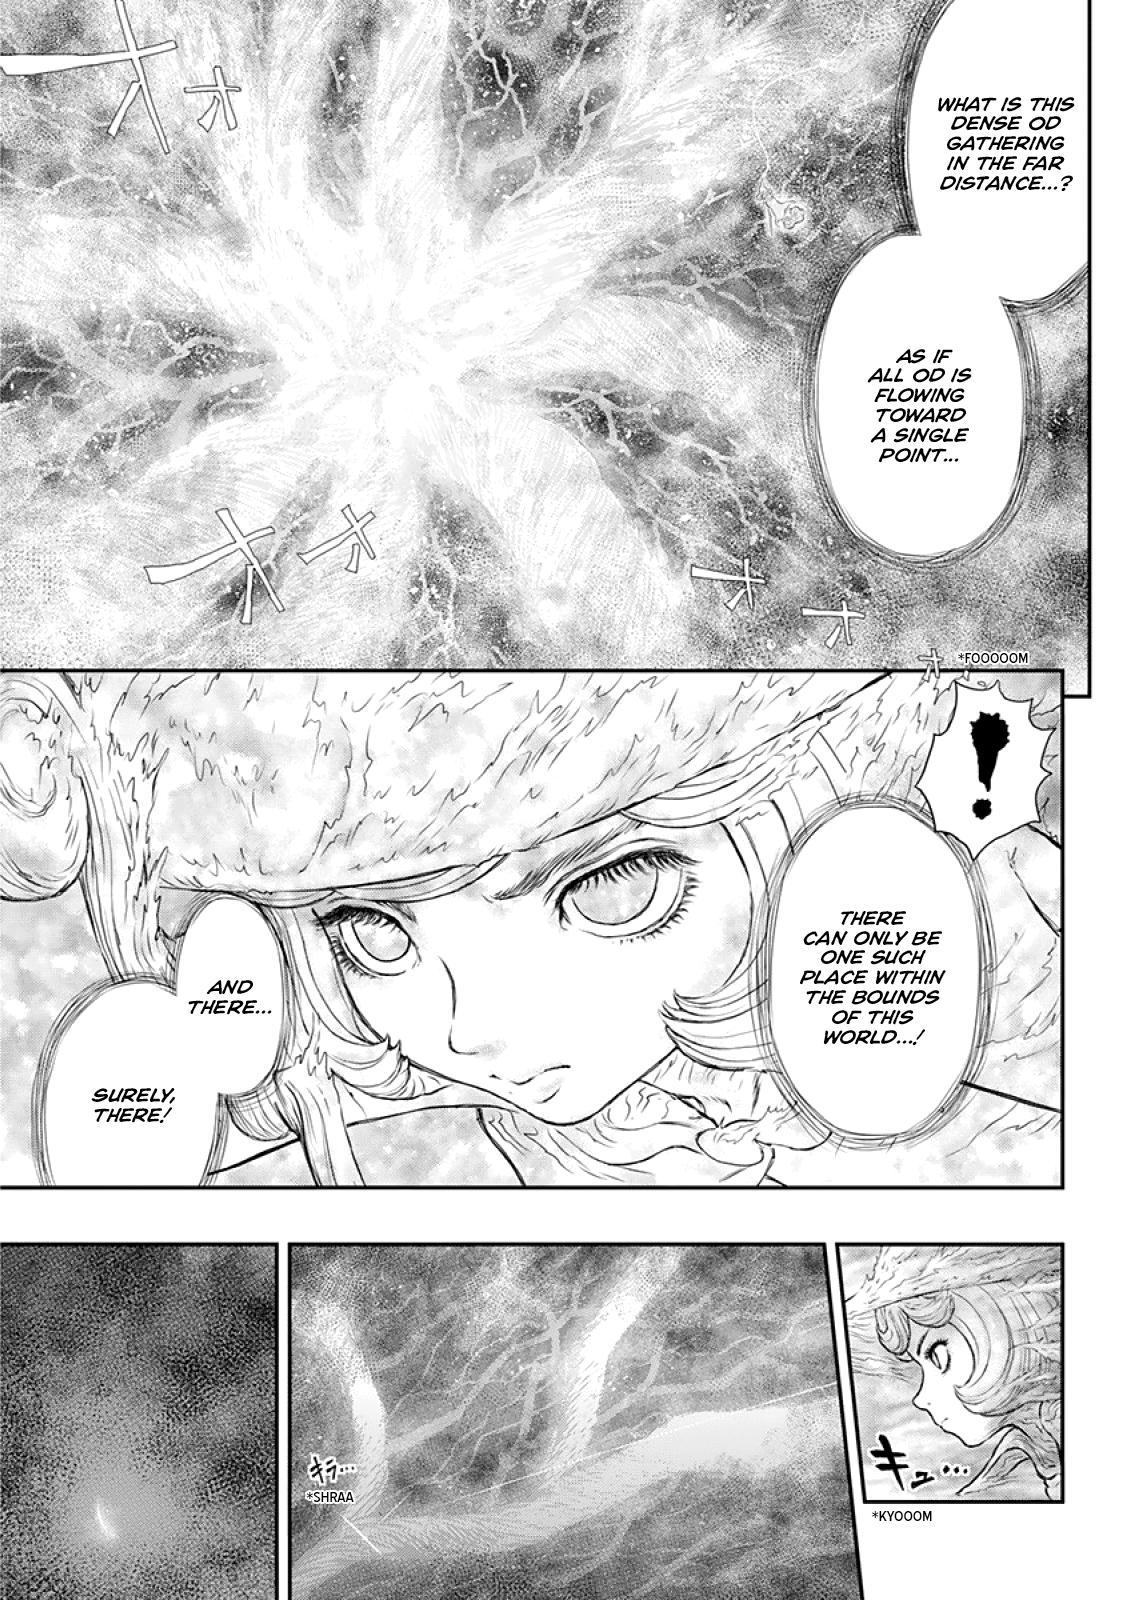 Berserk Manga Chapter 373 image 07